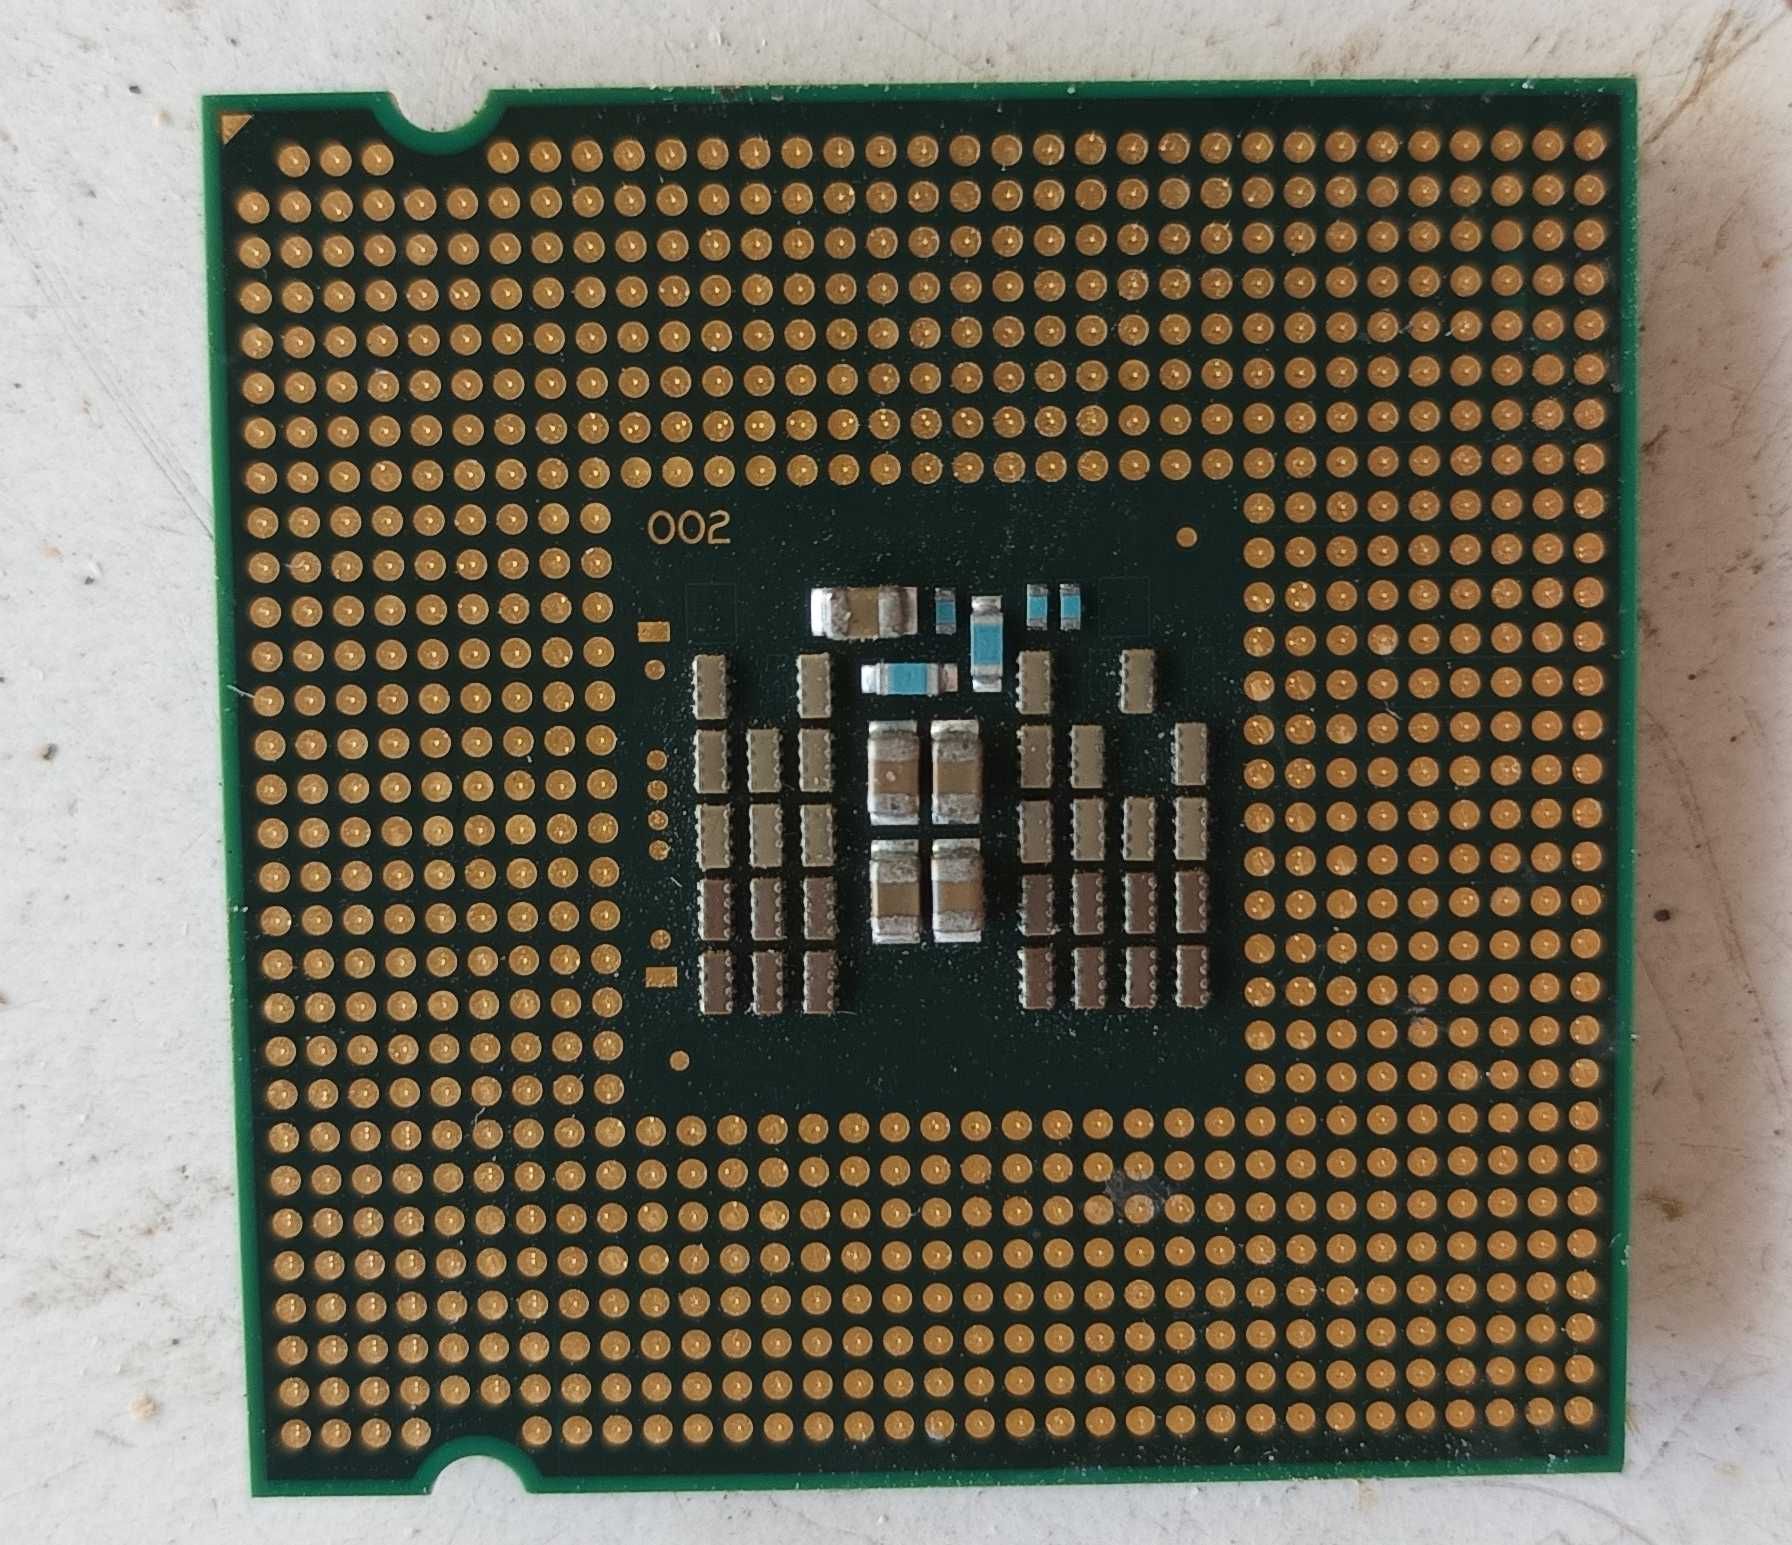 Processador Intel Core 2 Quad